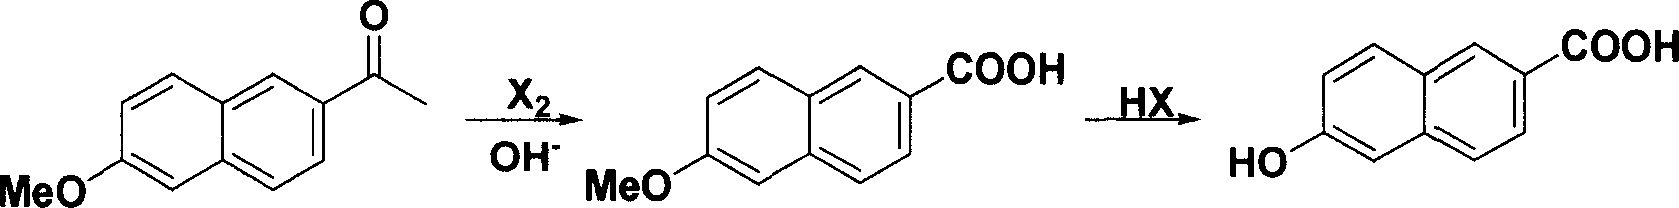 Method for synthesizing 6-hydroxy-2-naphthoic acid